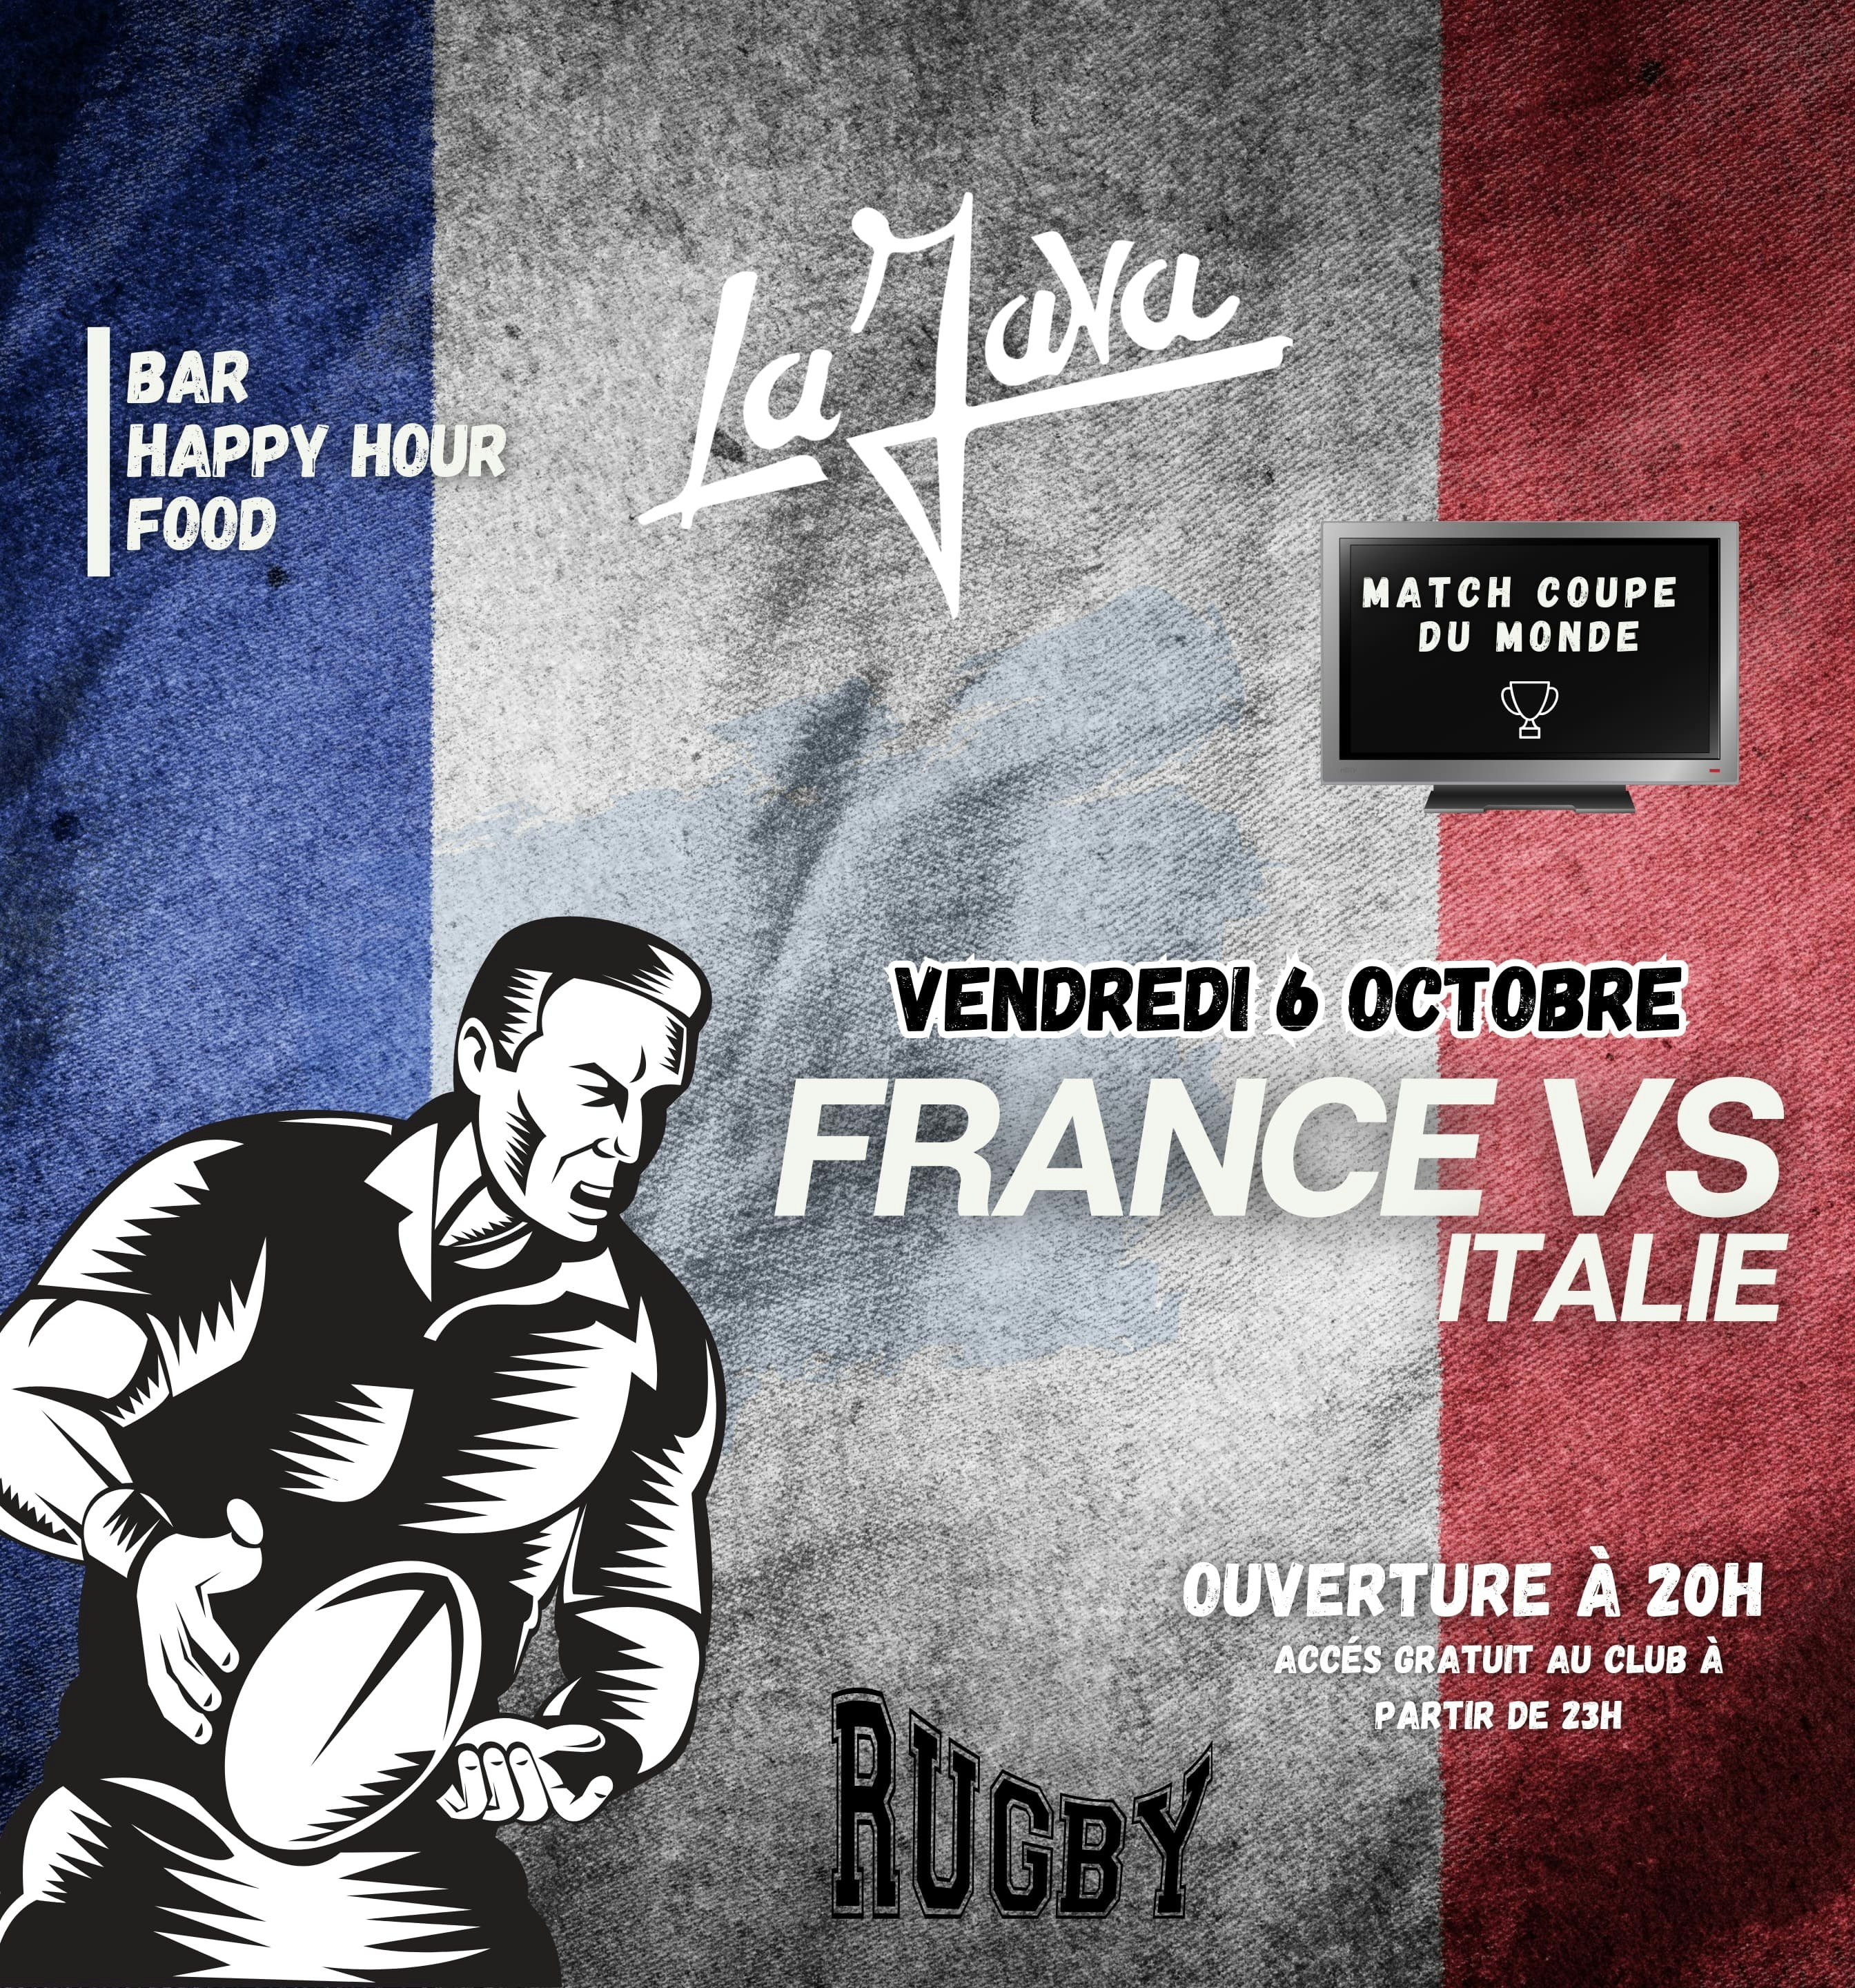 Coupe du monde de rugby France vs Italie Tickets Free 6 Oct La Java, Paris DICE